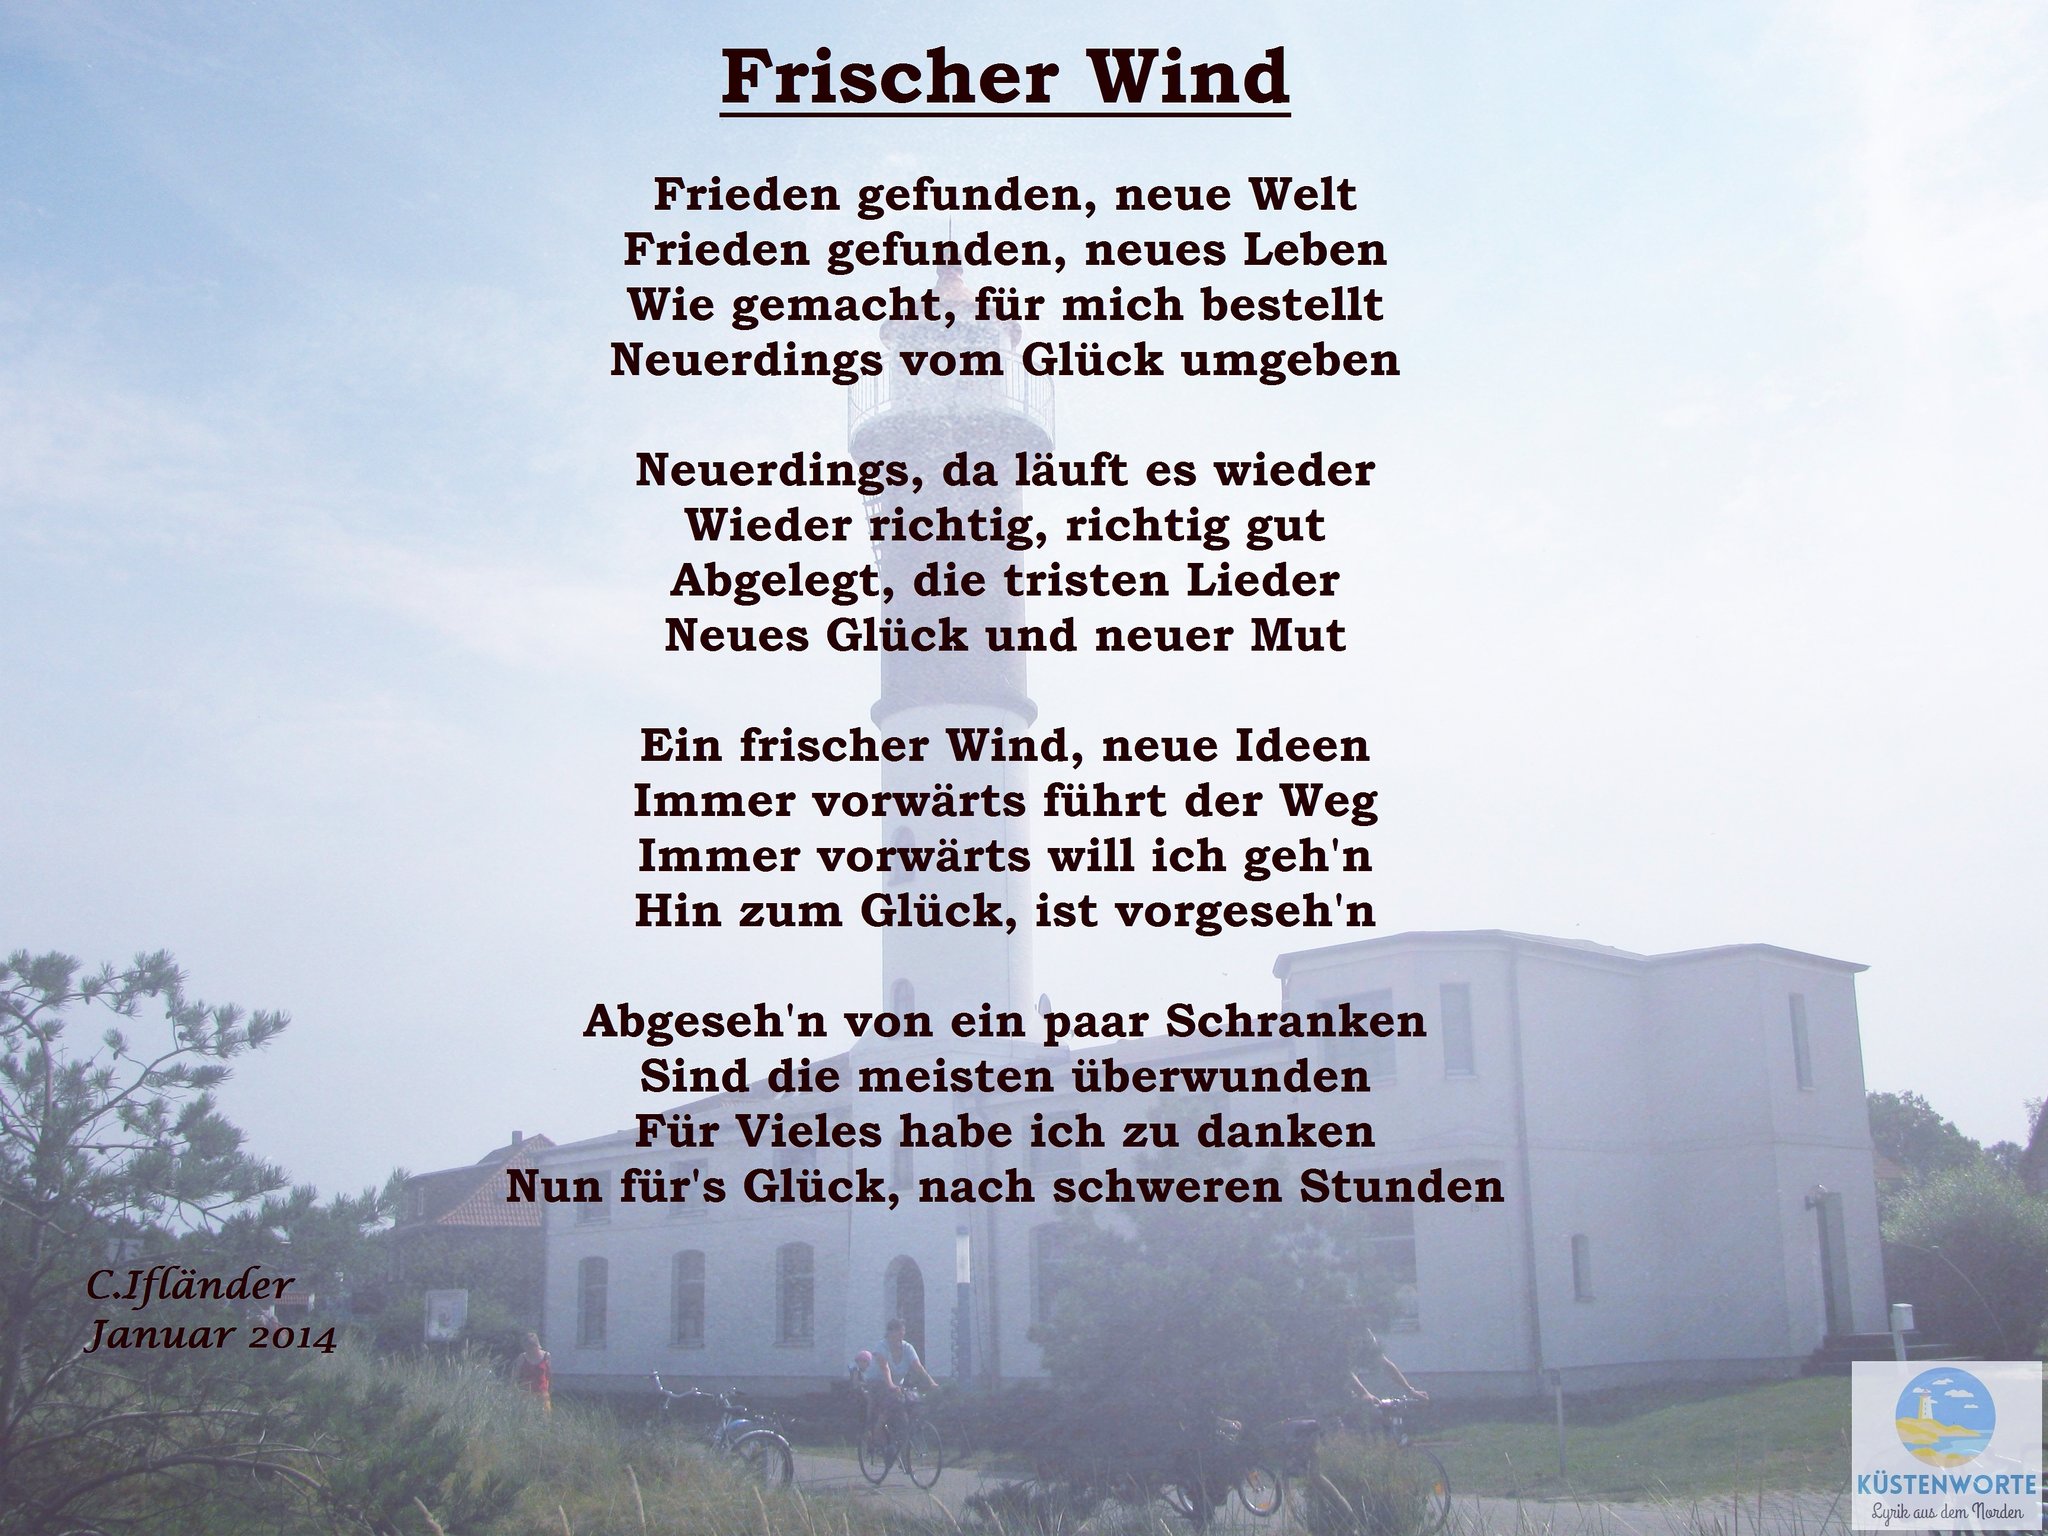 Küstenworte on Twitter: "Frischer Wind von @Way_farer92 (Januar 2014) #